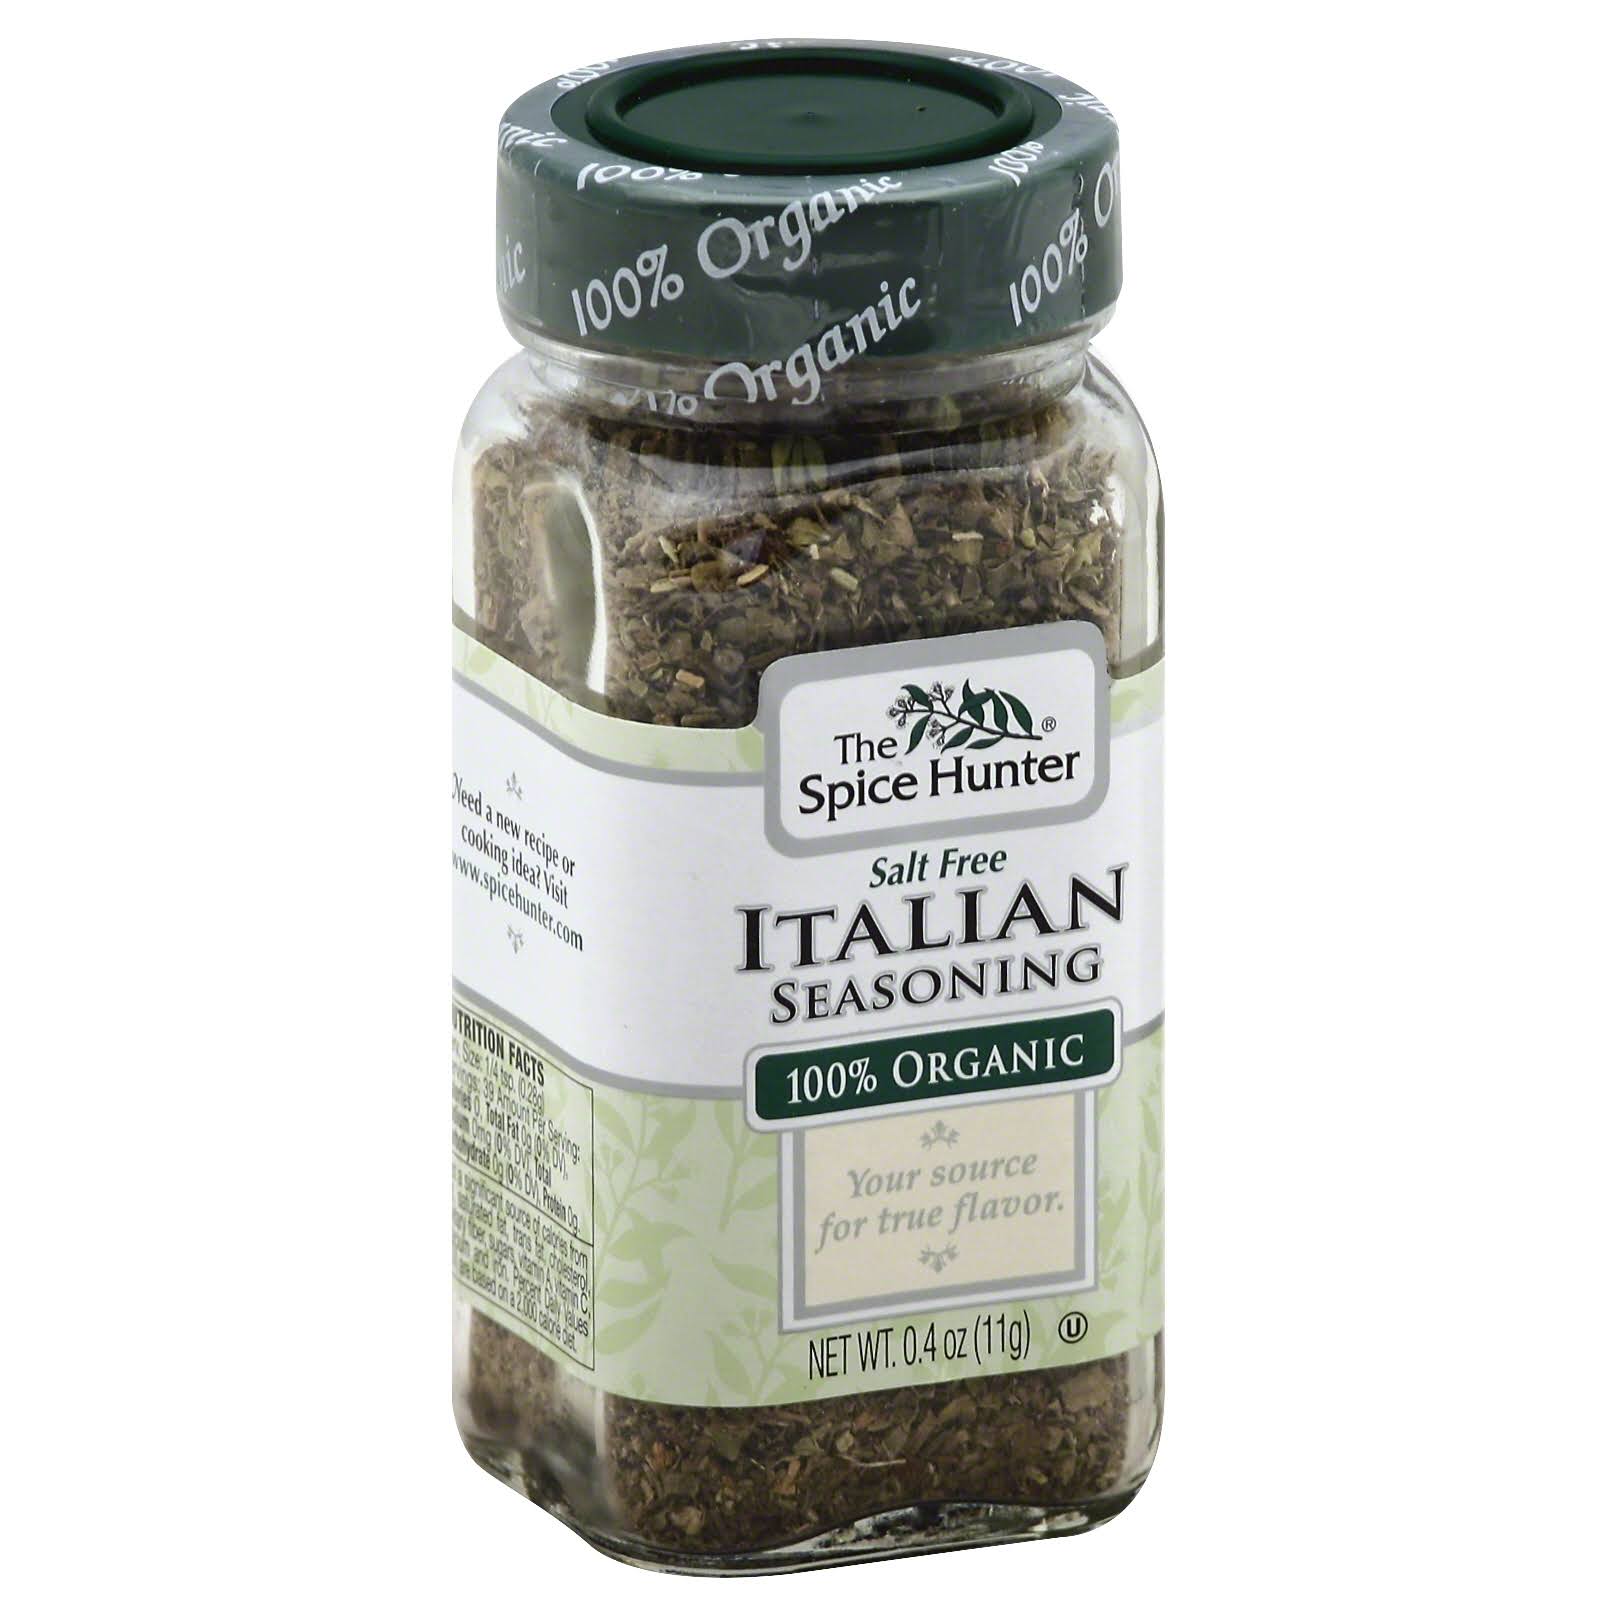 Spice Hunter Italian Seasoning, 100% Organic - 0.4 oz